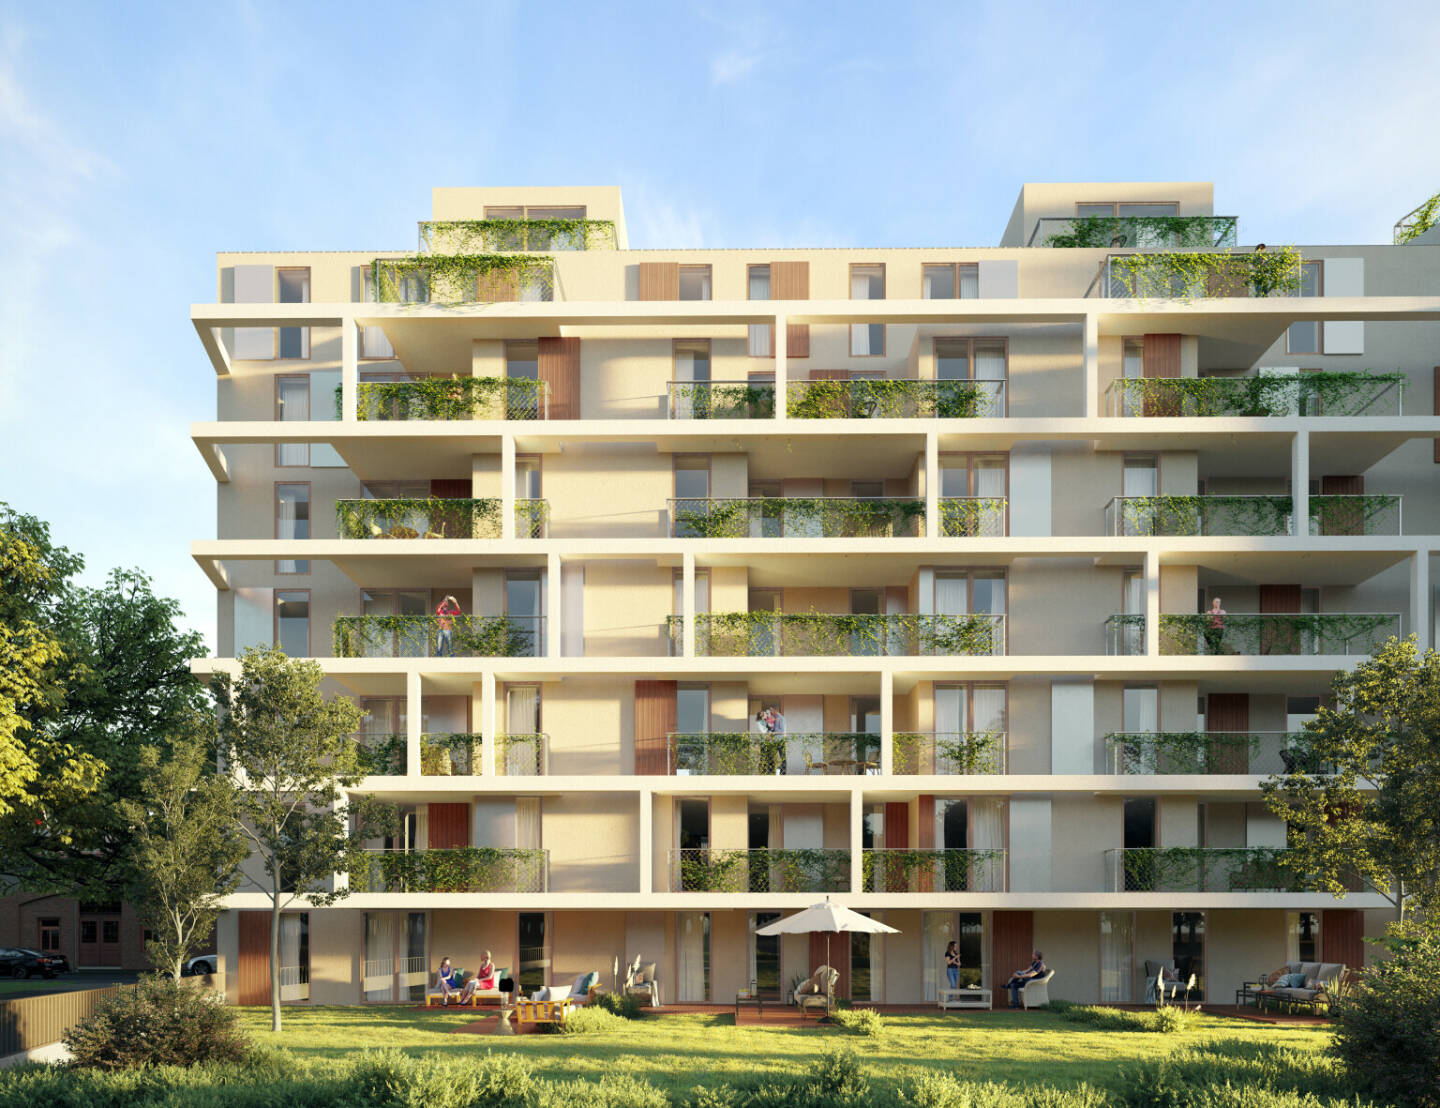 Ausblick auf 2022: WINEGG entwickelt 9 weitere Immobilienprojekte in Wien; im Bild: Wohnprojekt im Pratercottage; Fotocredit:JAKOBCZINGER Visual